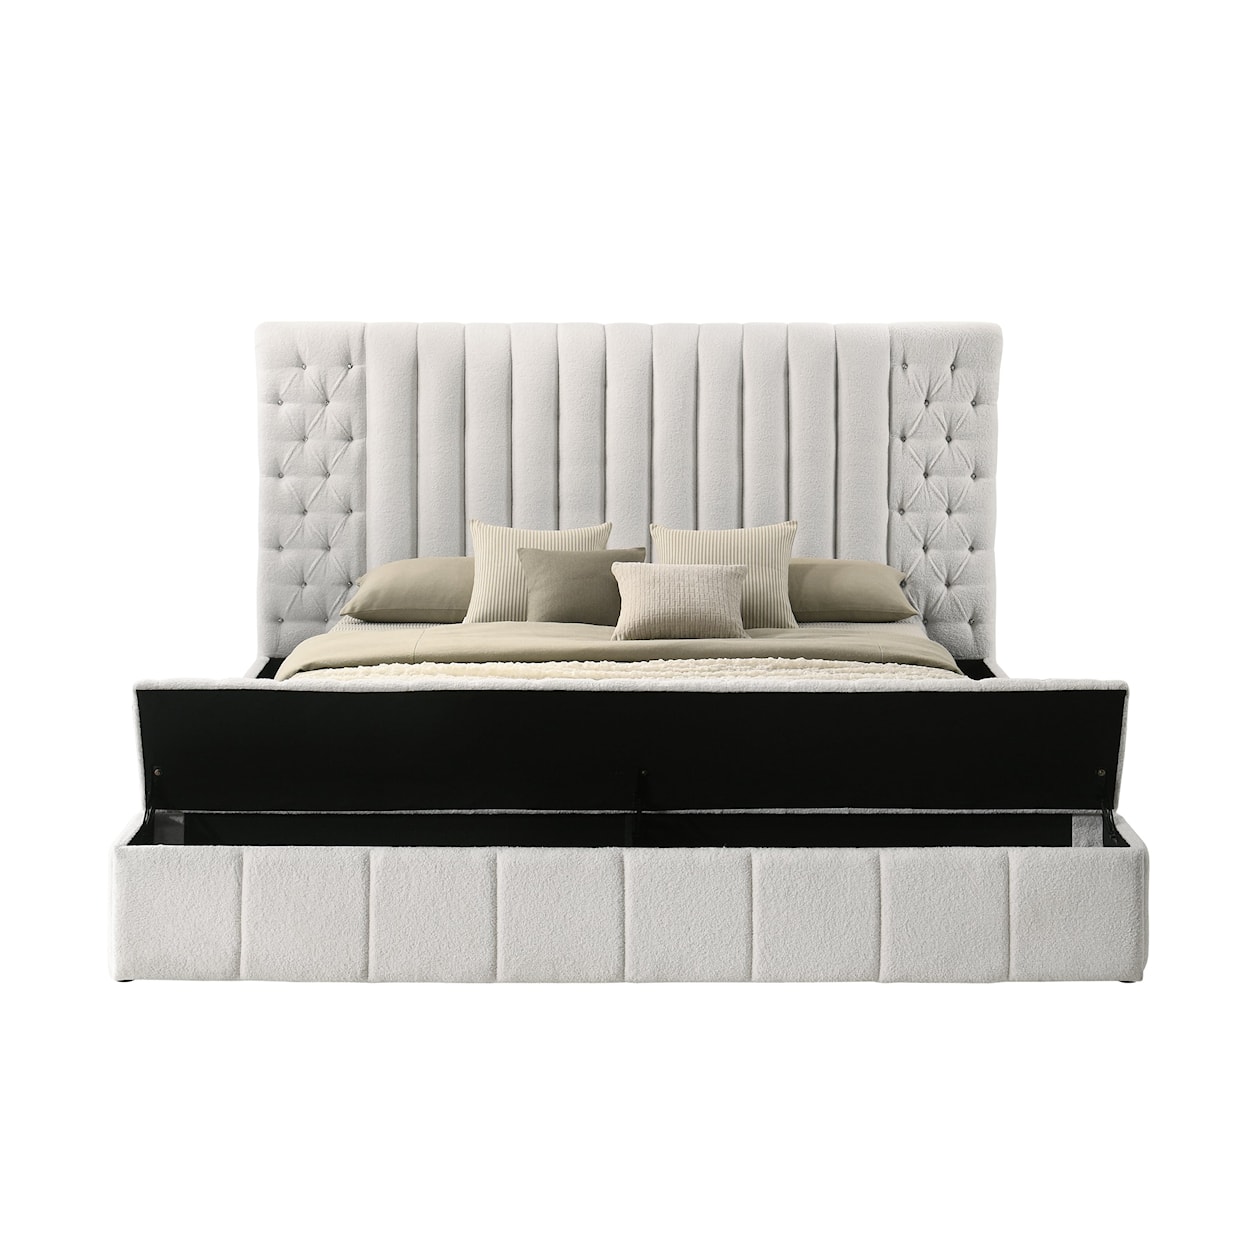 CM DANBURY Upholstered Storage Bed - Queen